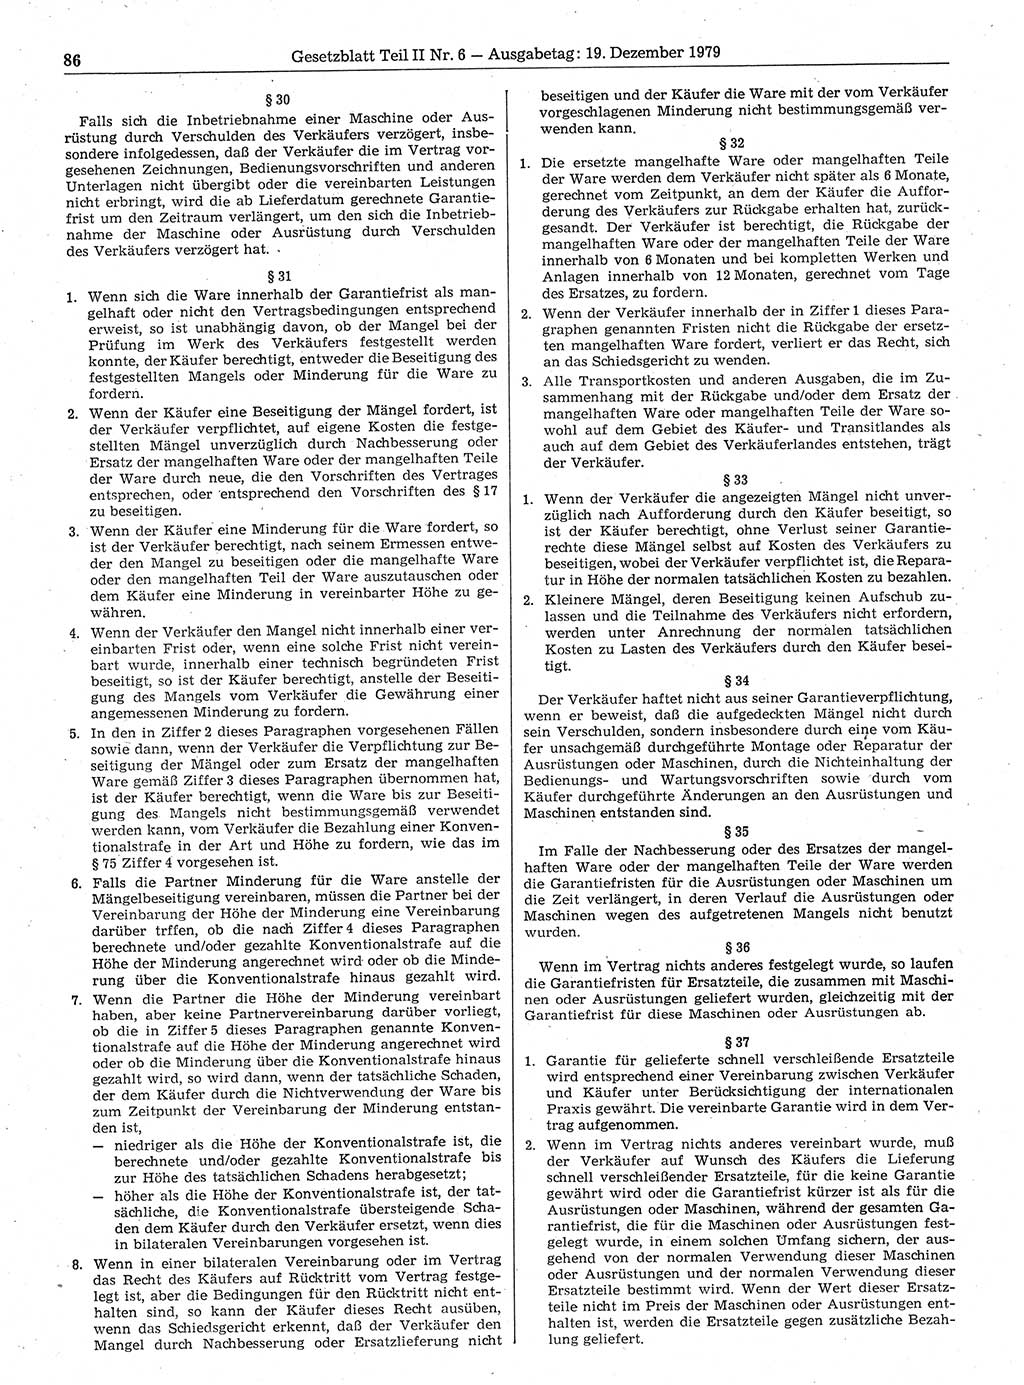 Gesetzblatt (GBl.) der Deutschen Demokratischen Republik (DDR) Teil ⅠⅠ 1979, Seite 86 (GBl. DDR ⅠⅠ 1979, S. 86)